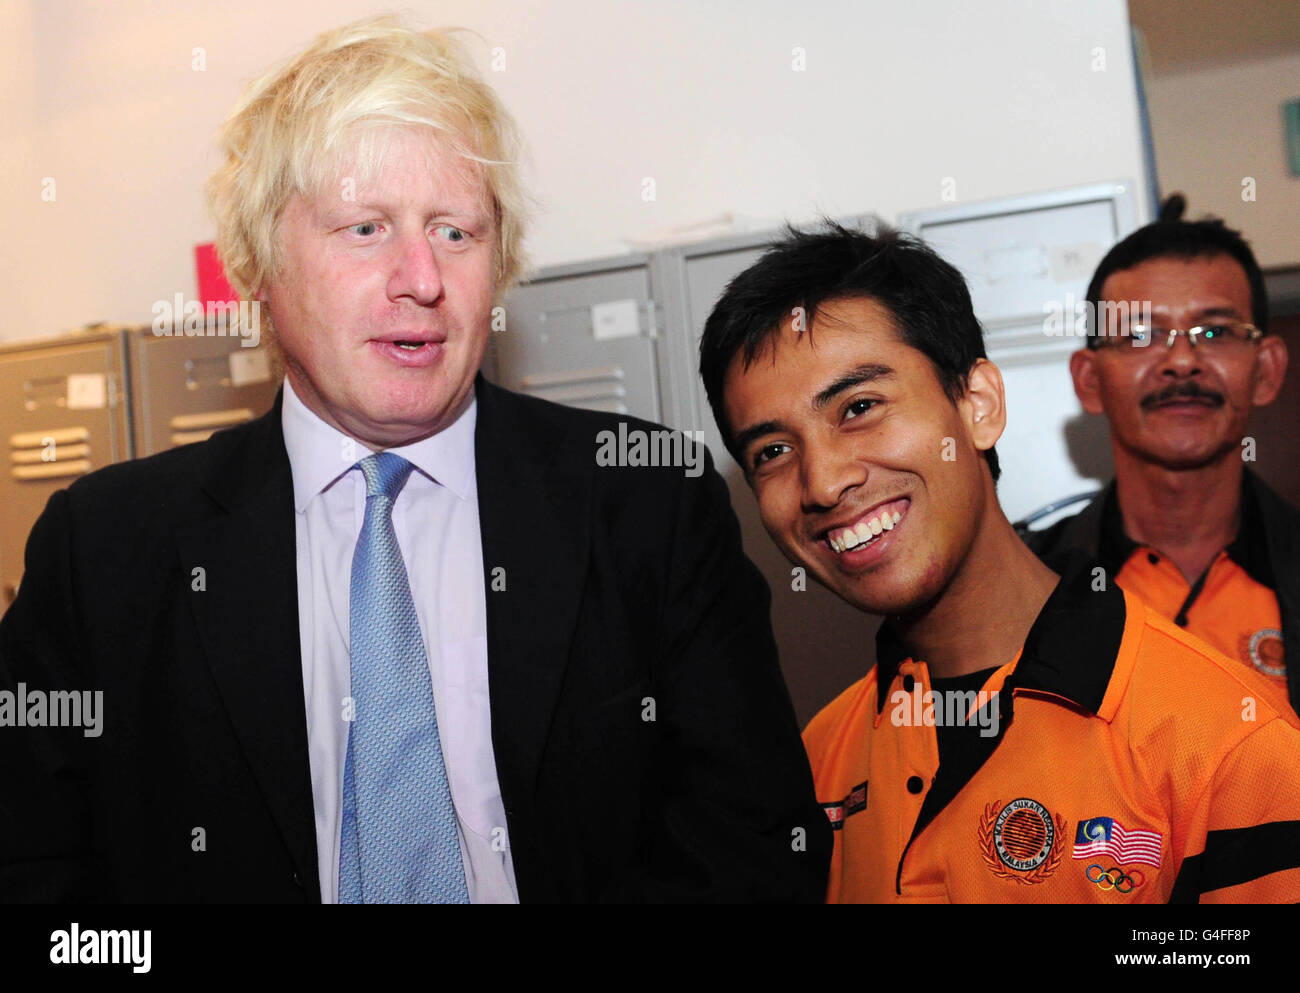 Le maire de Londres Boris Johnson est vu avec l'étudiant malaisien Ashraf Rossli aux Championnats du monde de badminton à Wembley Arena, Londres. Banque D'Images